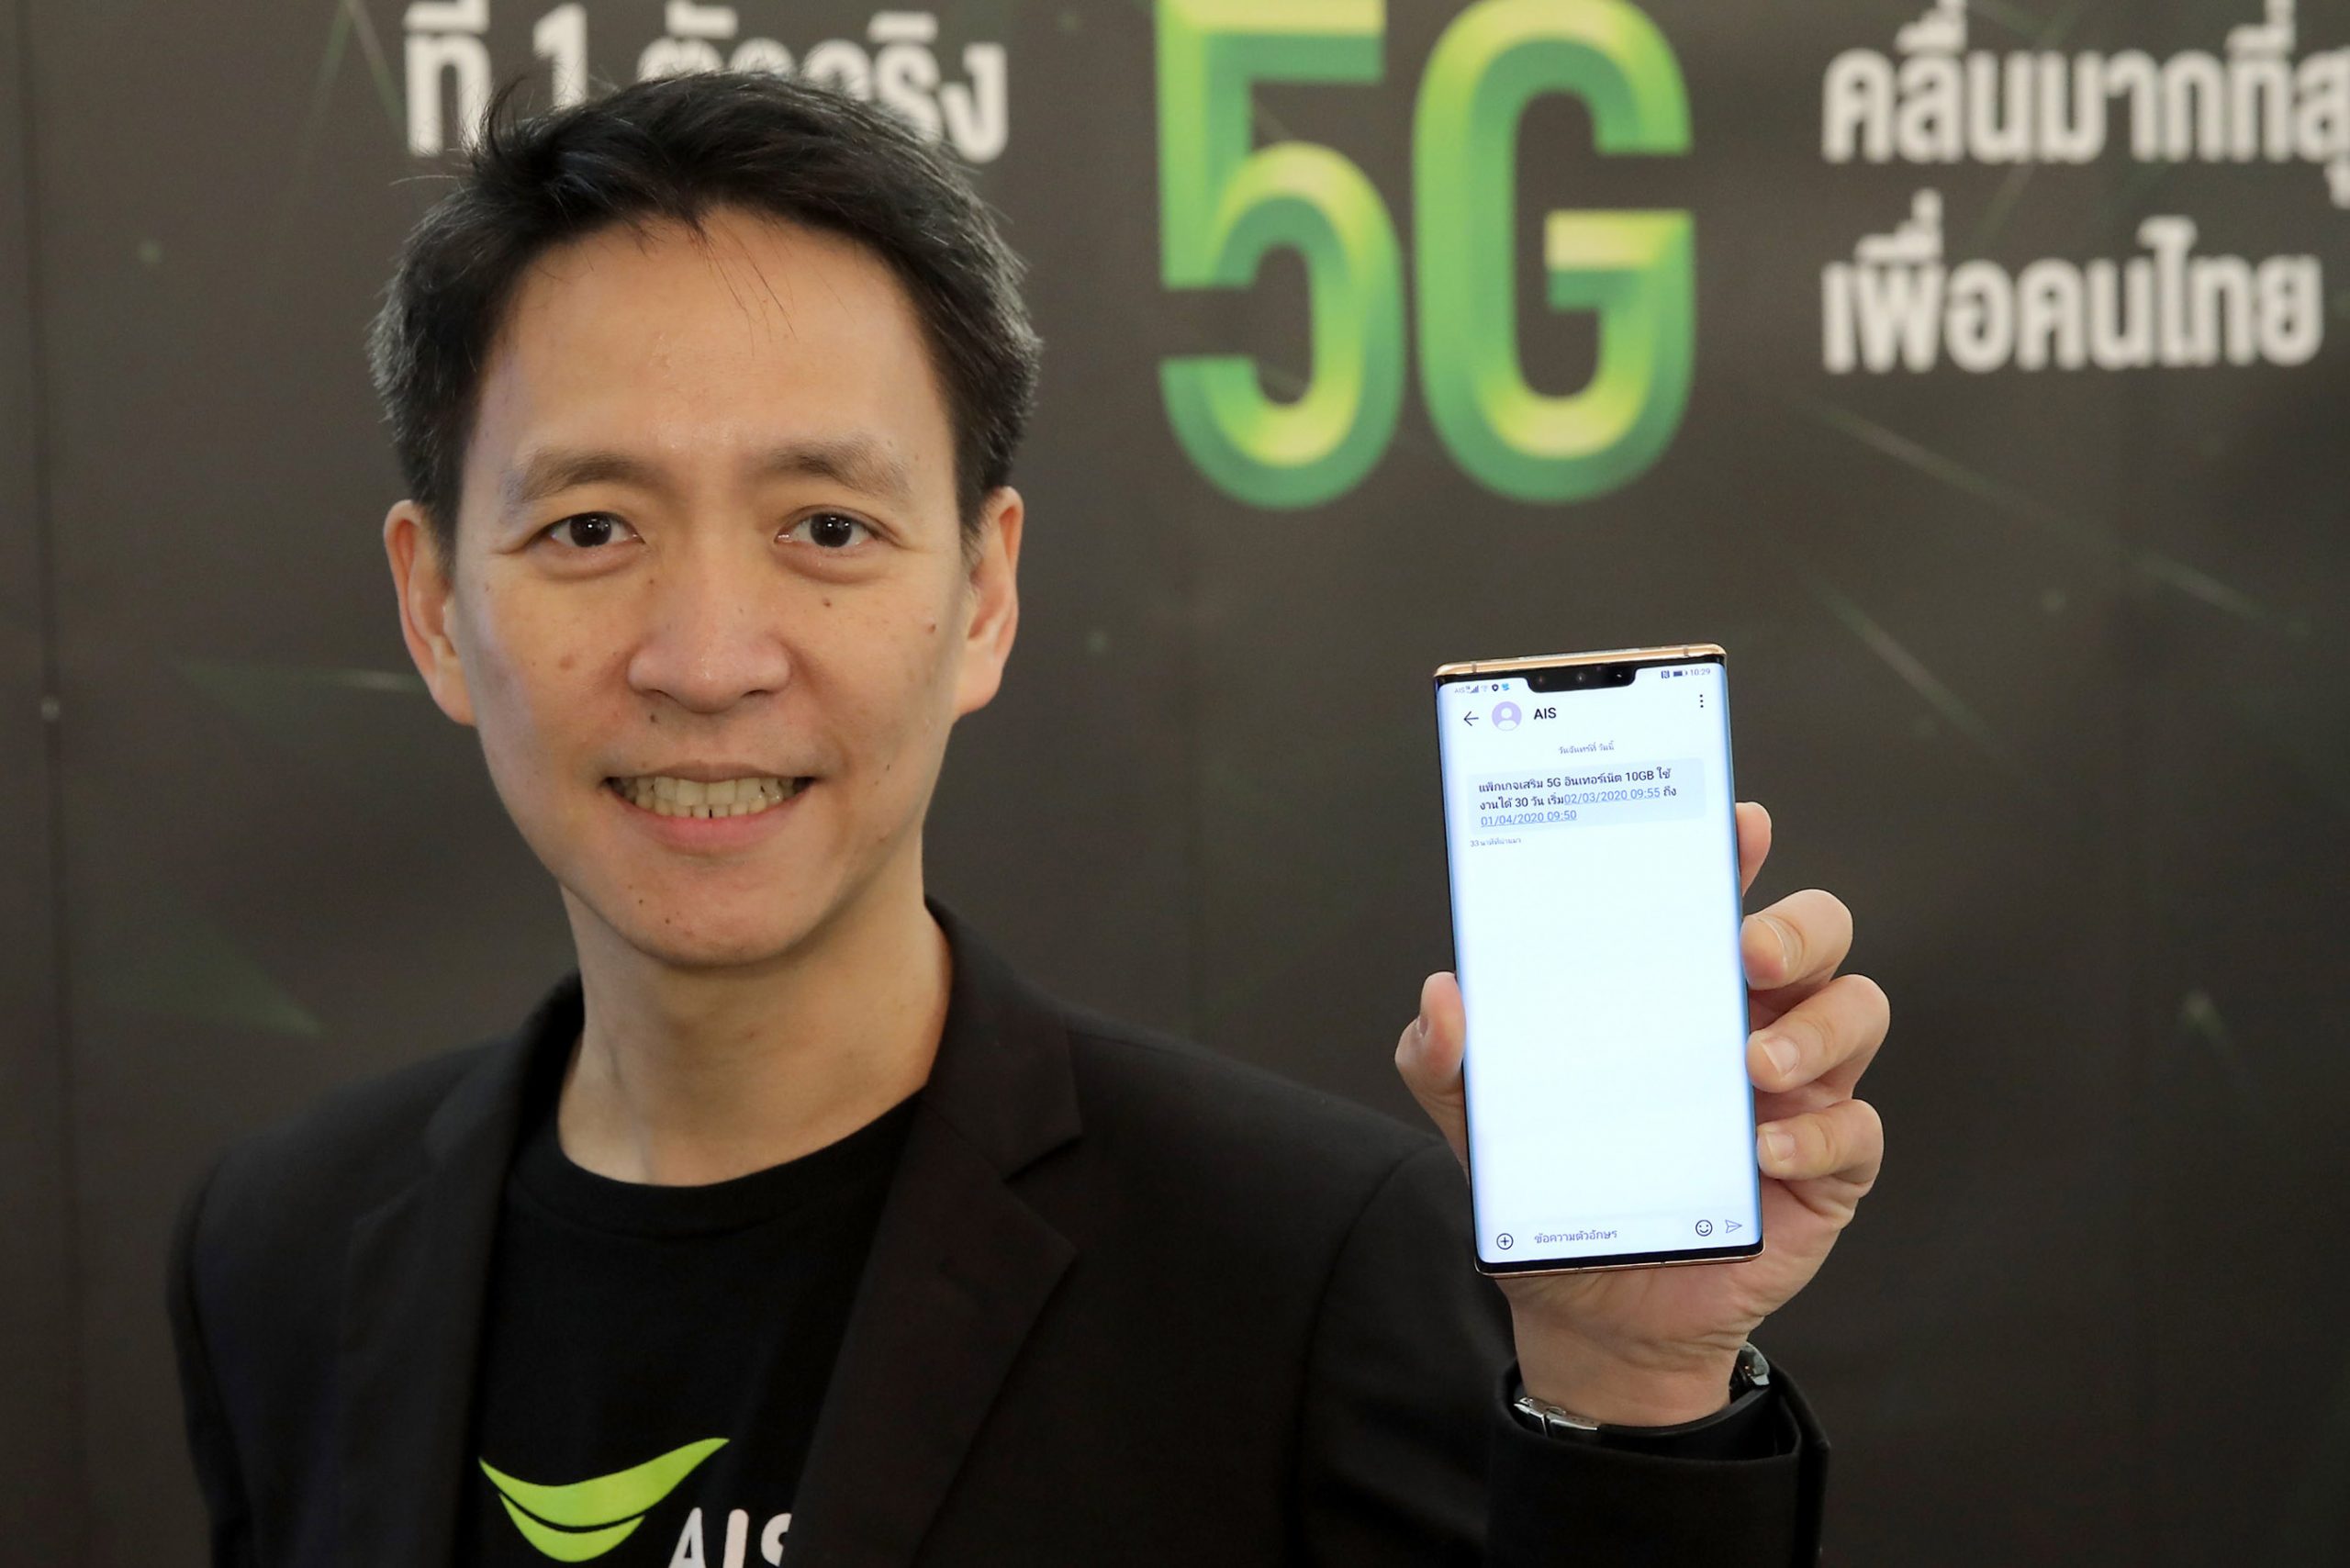 AIS พร้อมให้คนไทยเริ่มให้บริการ 5G ได้แล้ววันนี้! ปักหมุดไทยเป็นประเทศแรกที่ให้บริการ 5G บนมือถือในเอเชียตะวันออกเฉียงใต้ได้สำเร็จ